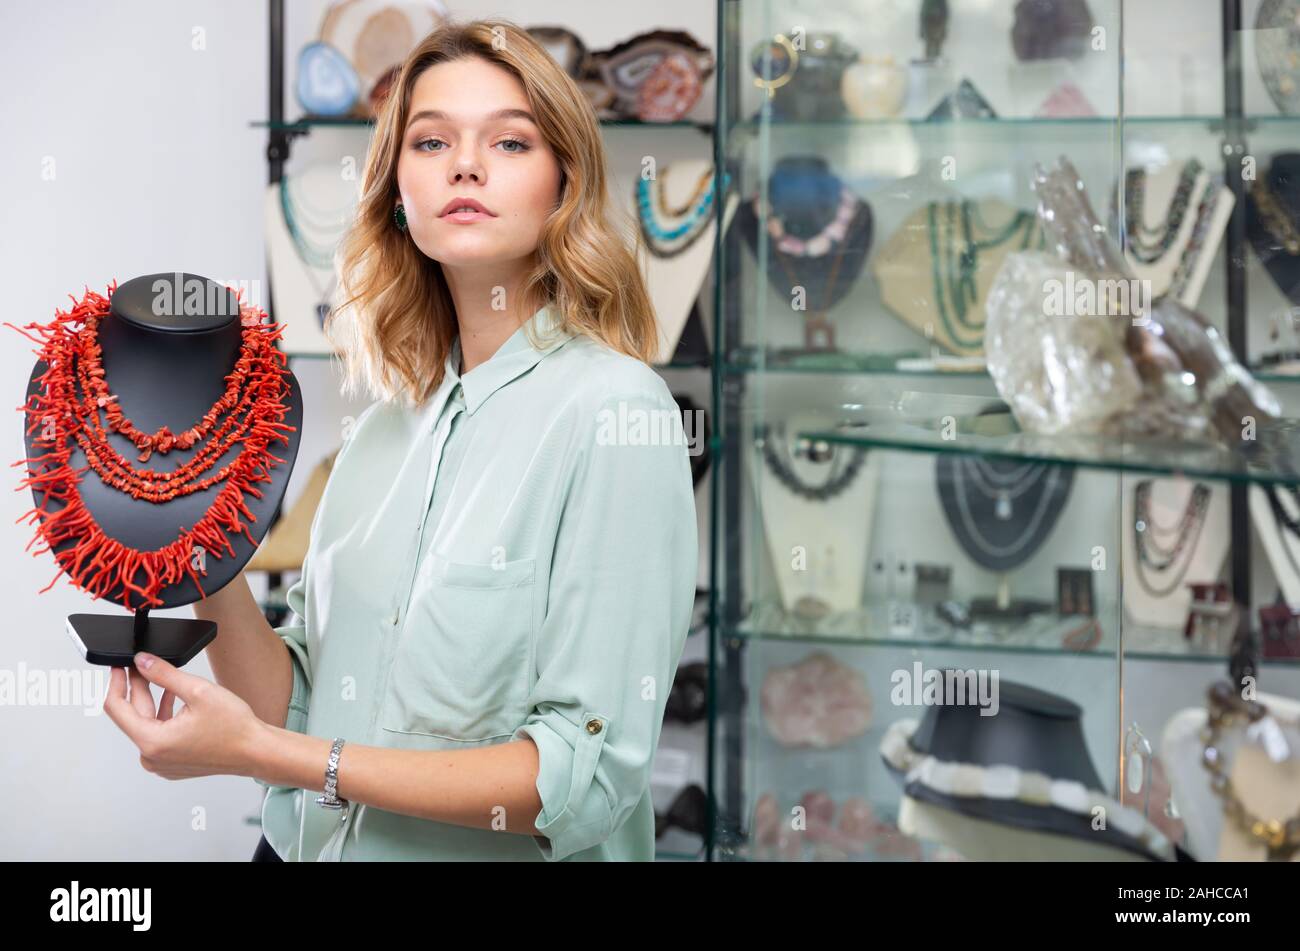 Erfolgreiche junge Verkäuferin zeigt rote Koralle Kette Schmuck Shop  Stockfotografie - Alamy